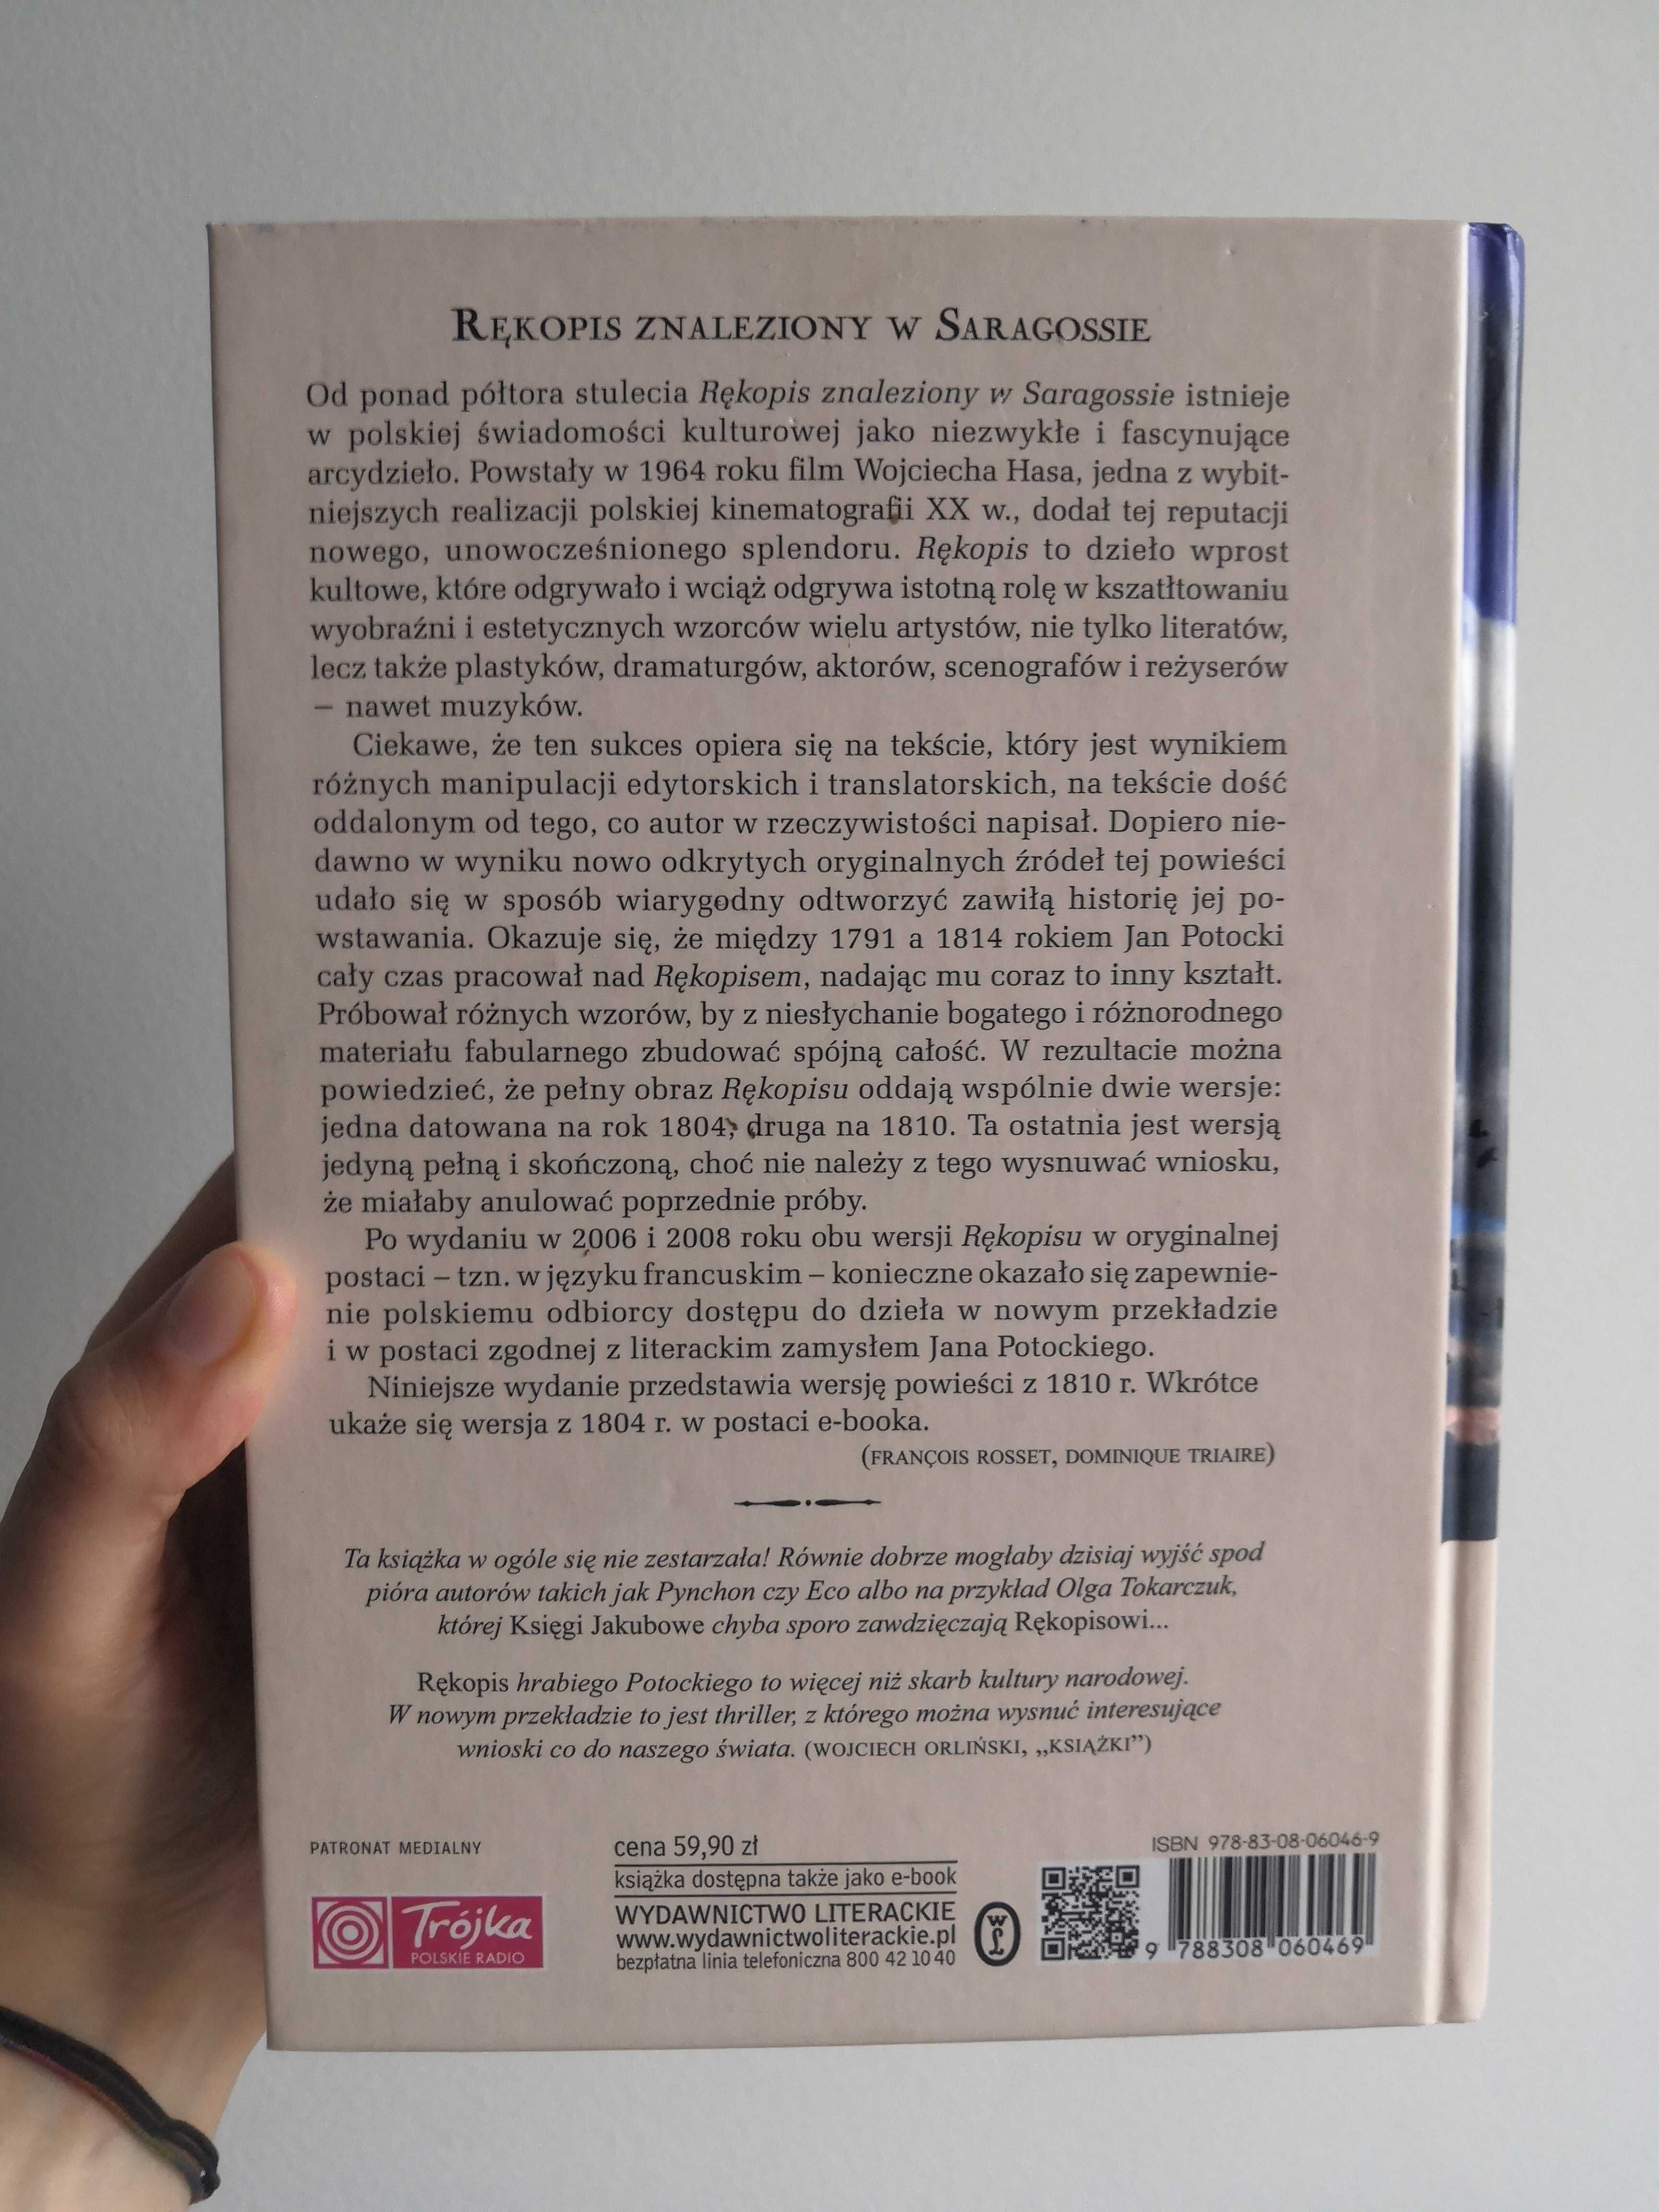 Rękopis znaleziony w Saragossie, Jan Potocki - wyd. 2015, biały kruk